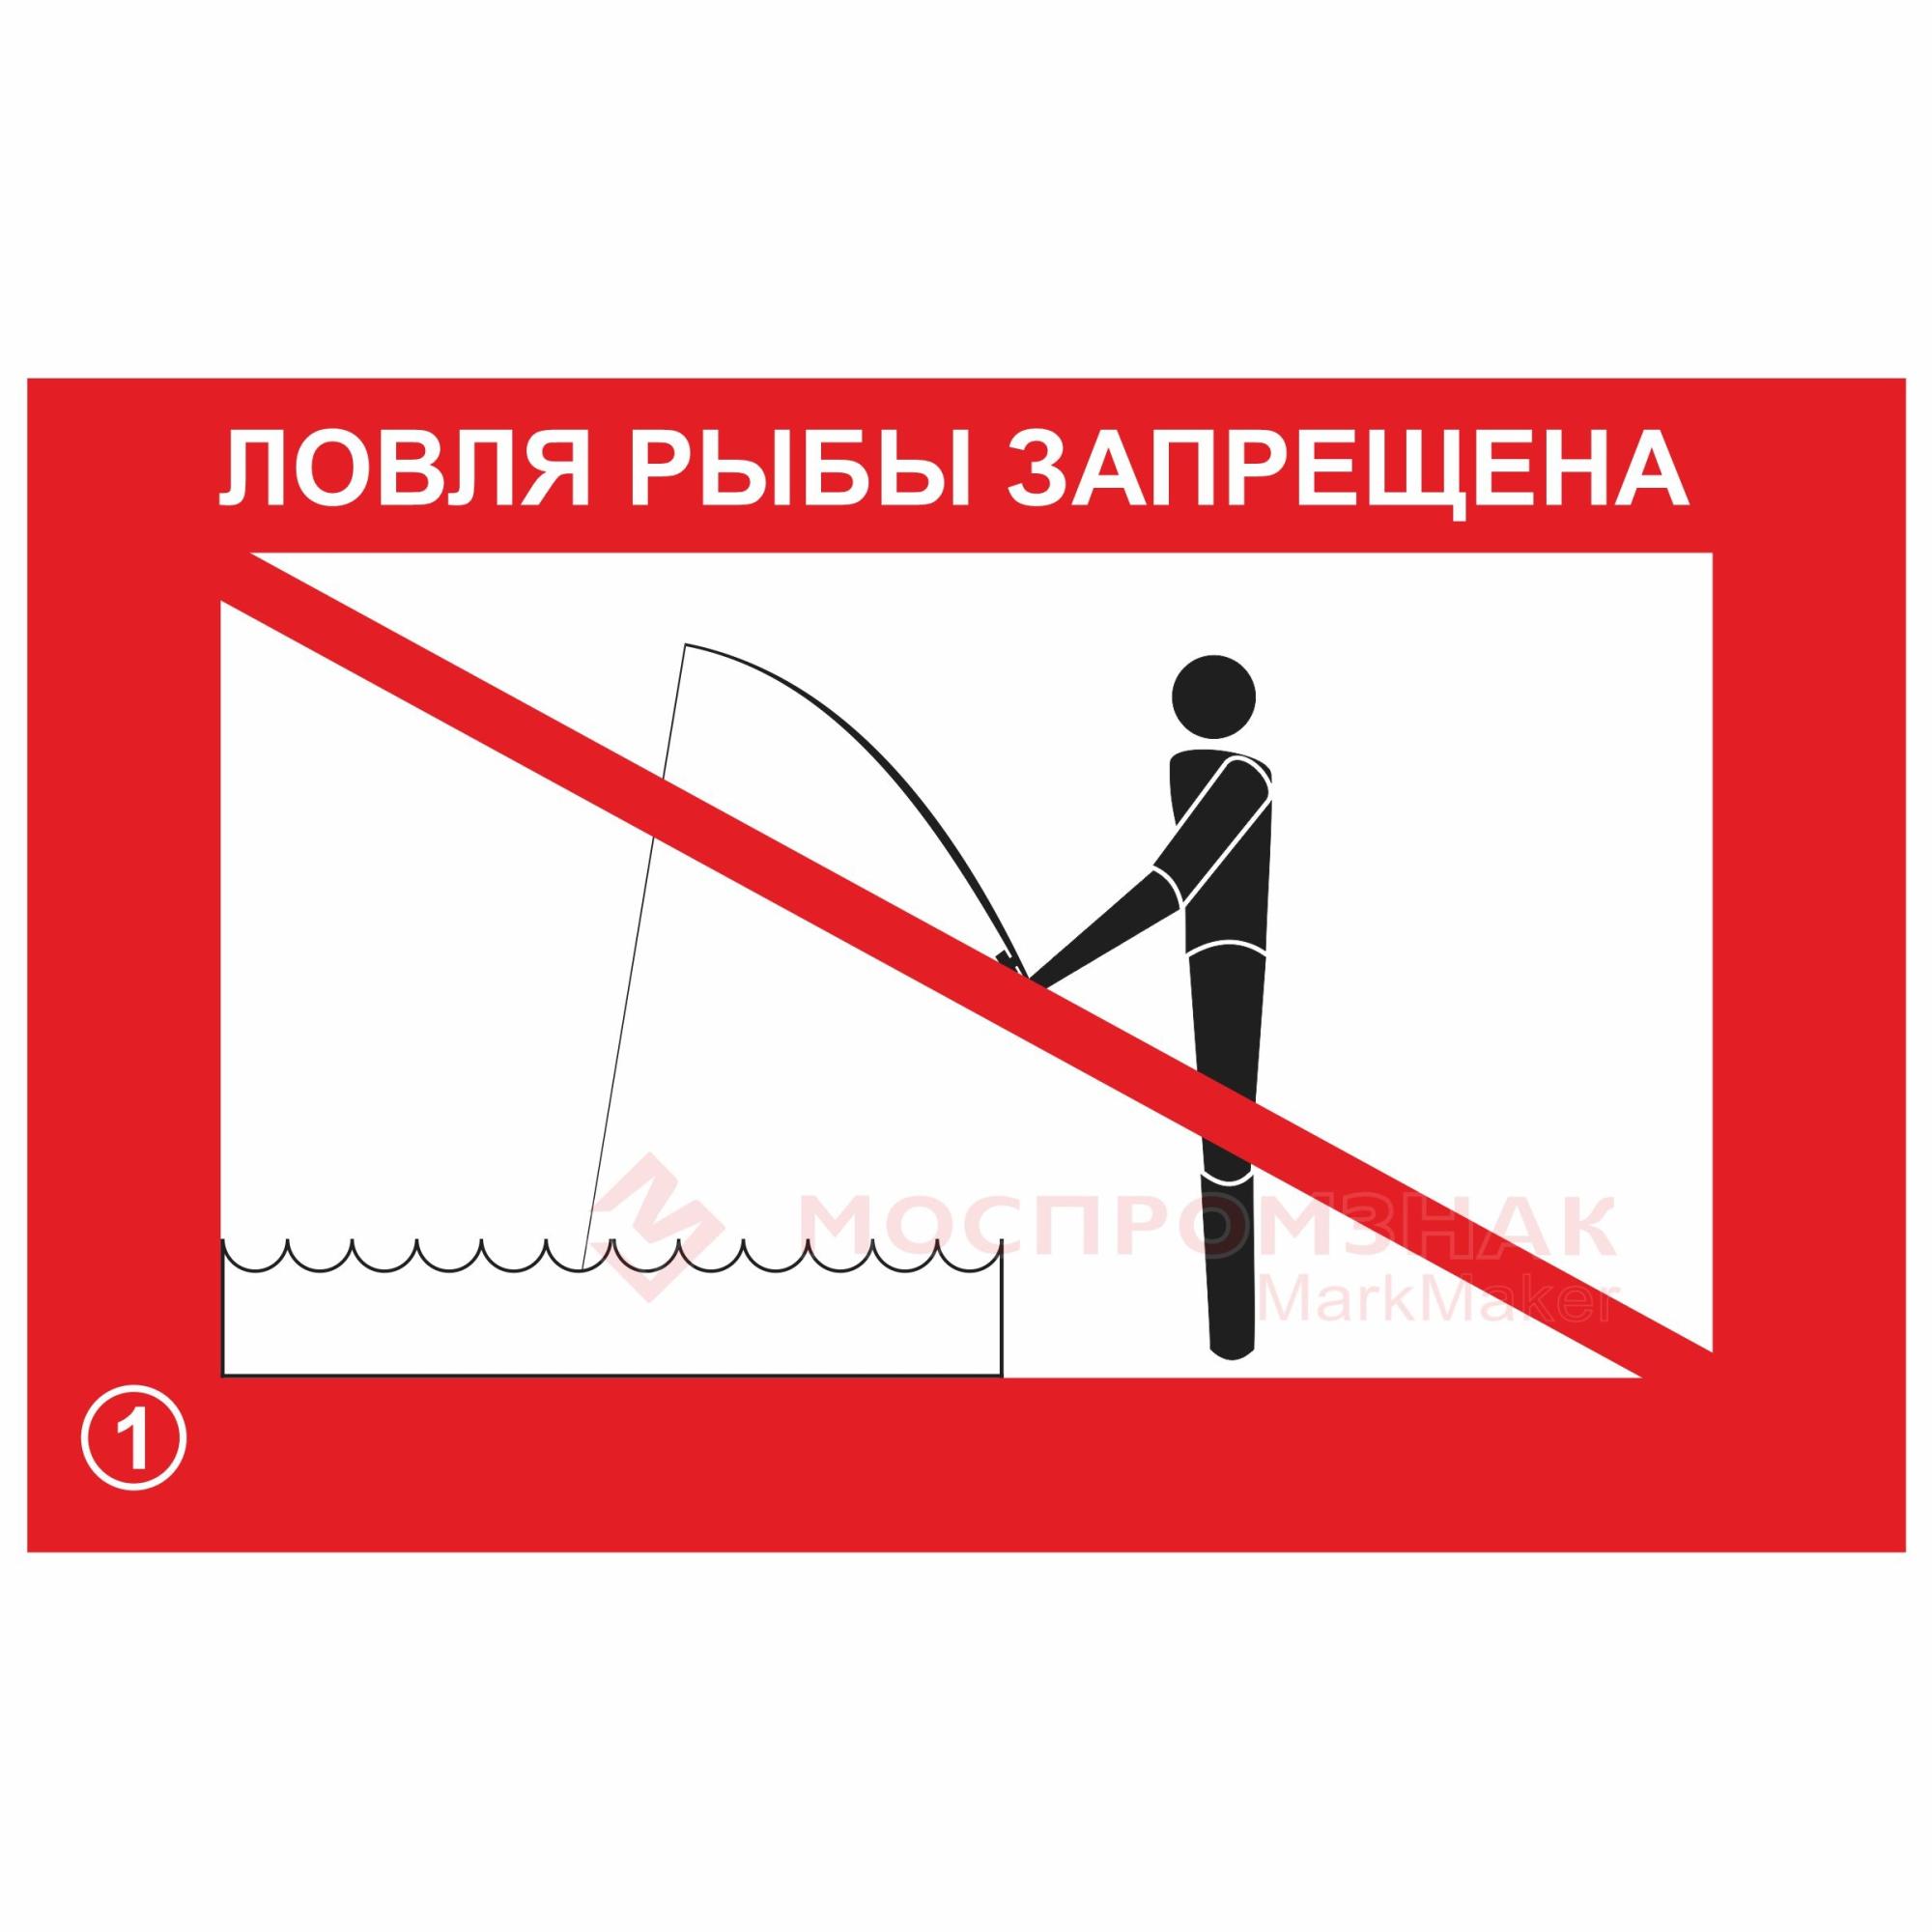 О запрете ловли рыбы. Ловля рыбы запрещена. Ловля рыбы запрещена знак. Ловля рыбы запрещена табличка. Рыбная ловля запрещена табличка.